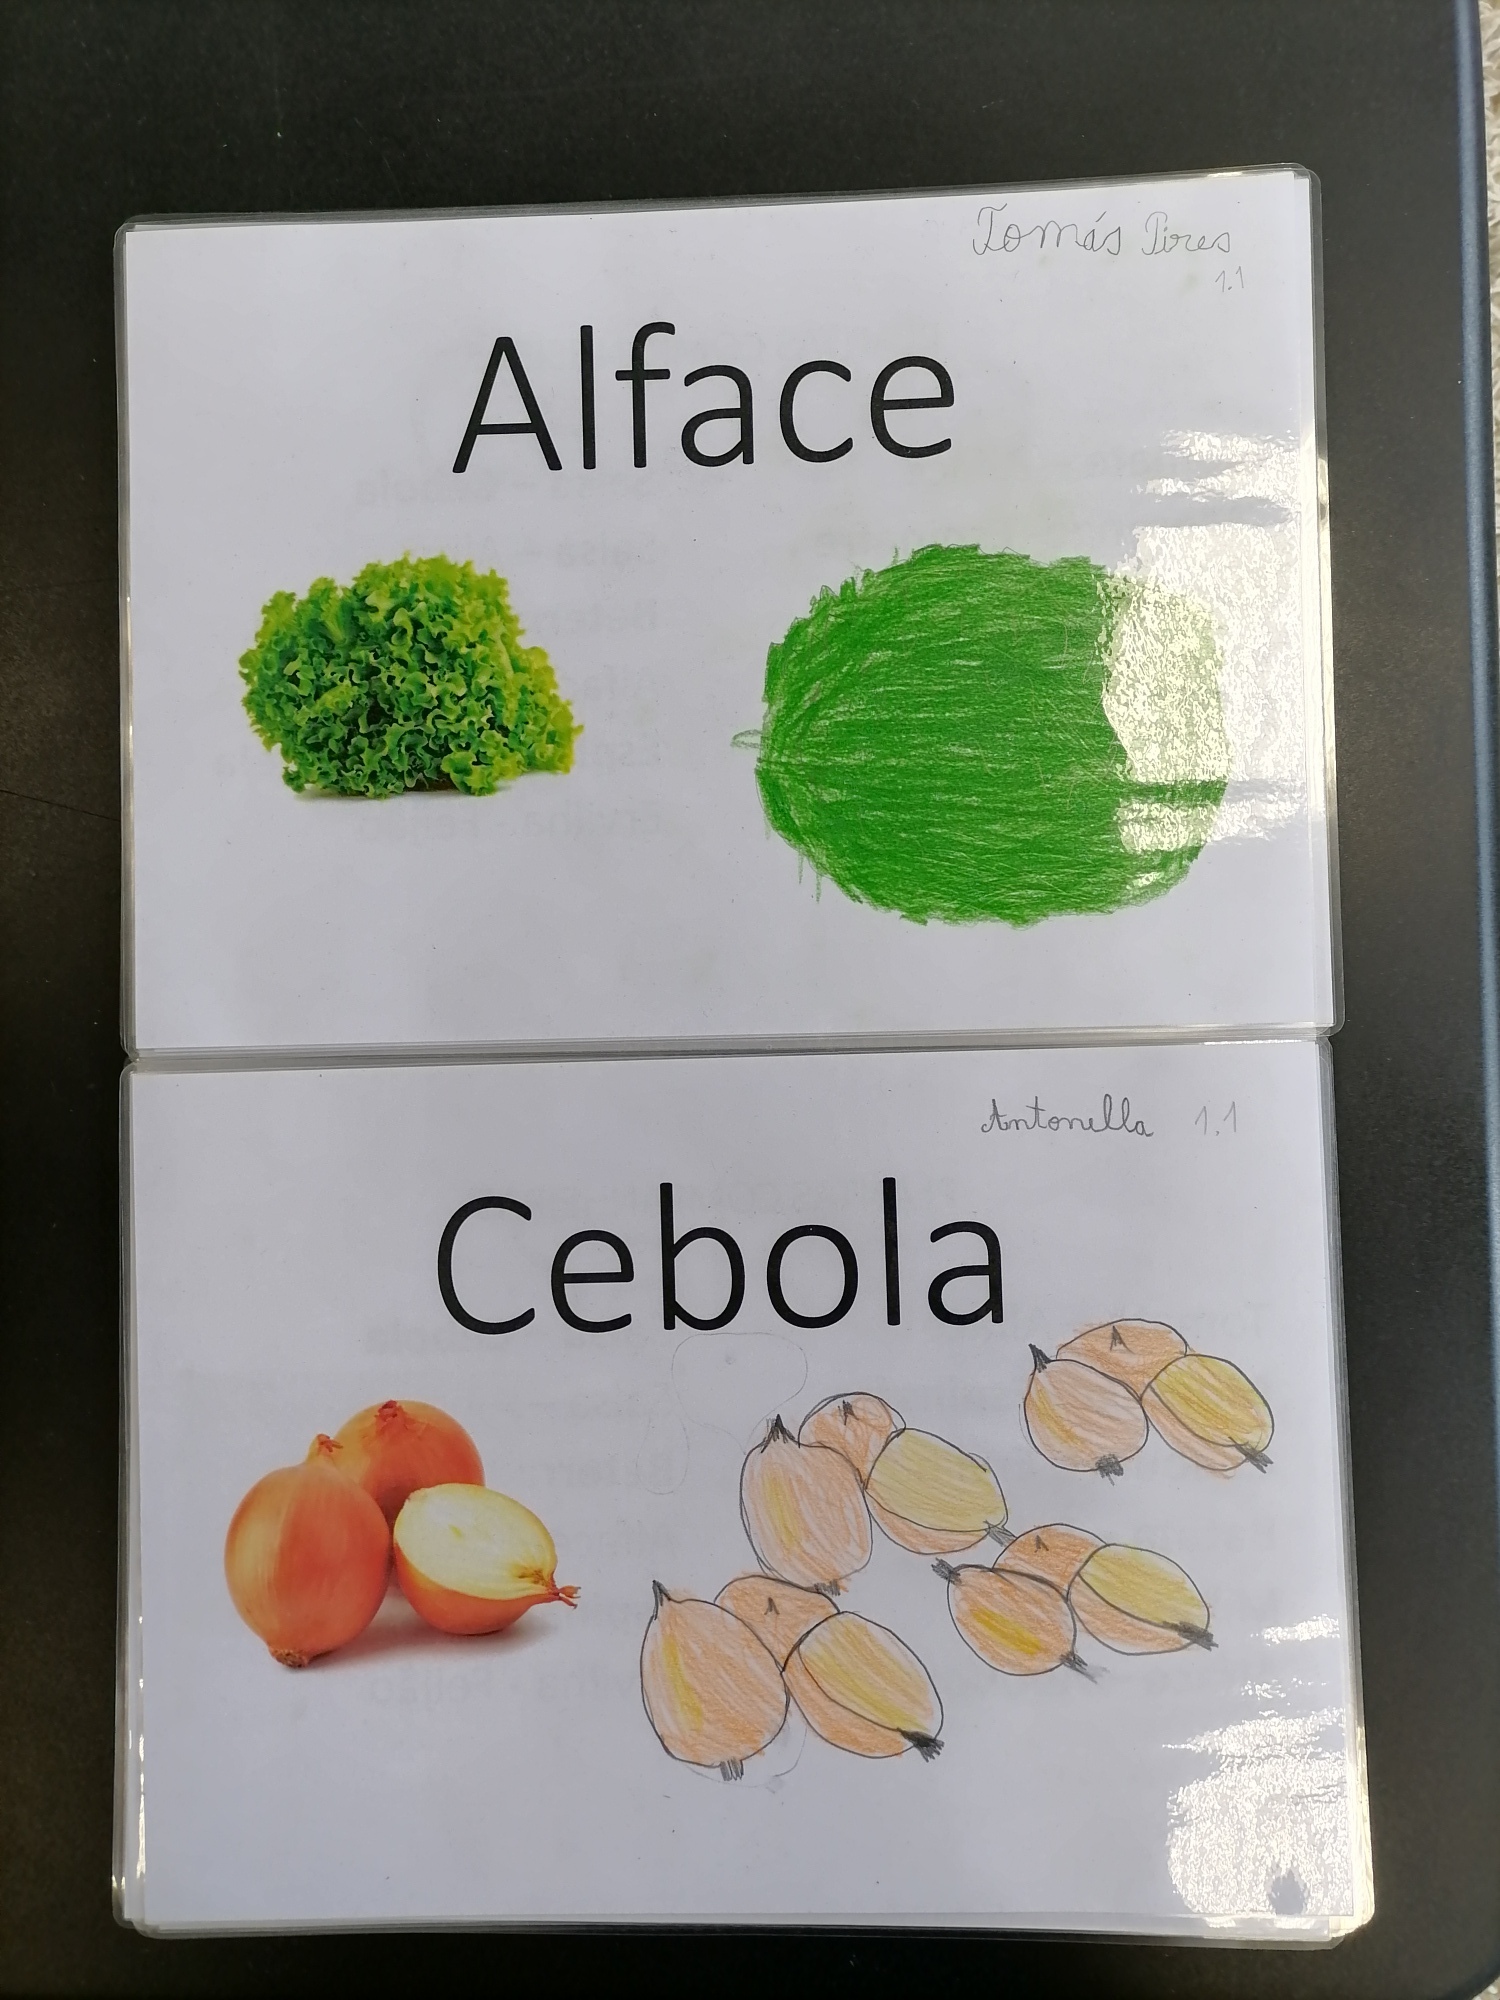 Consorciação de Alface e Cebola